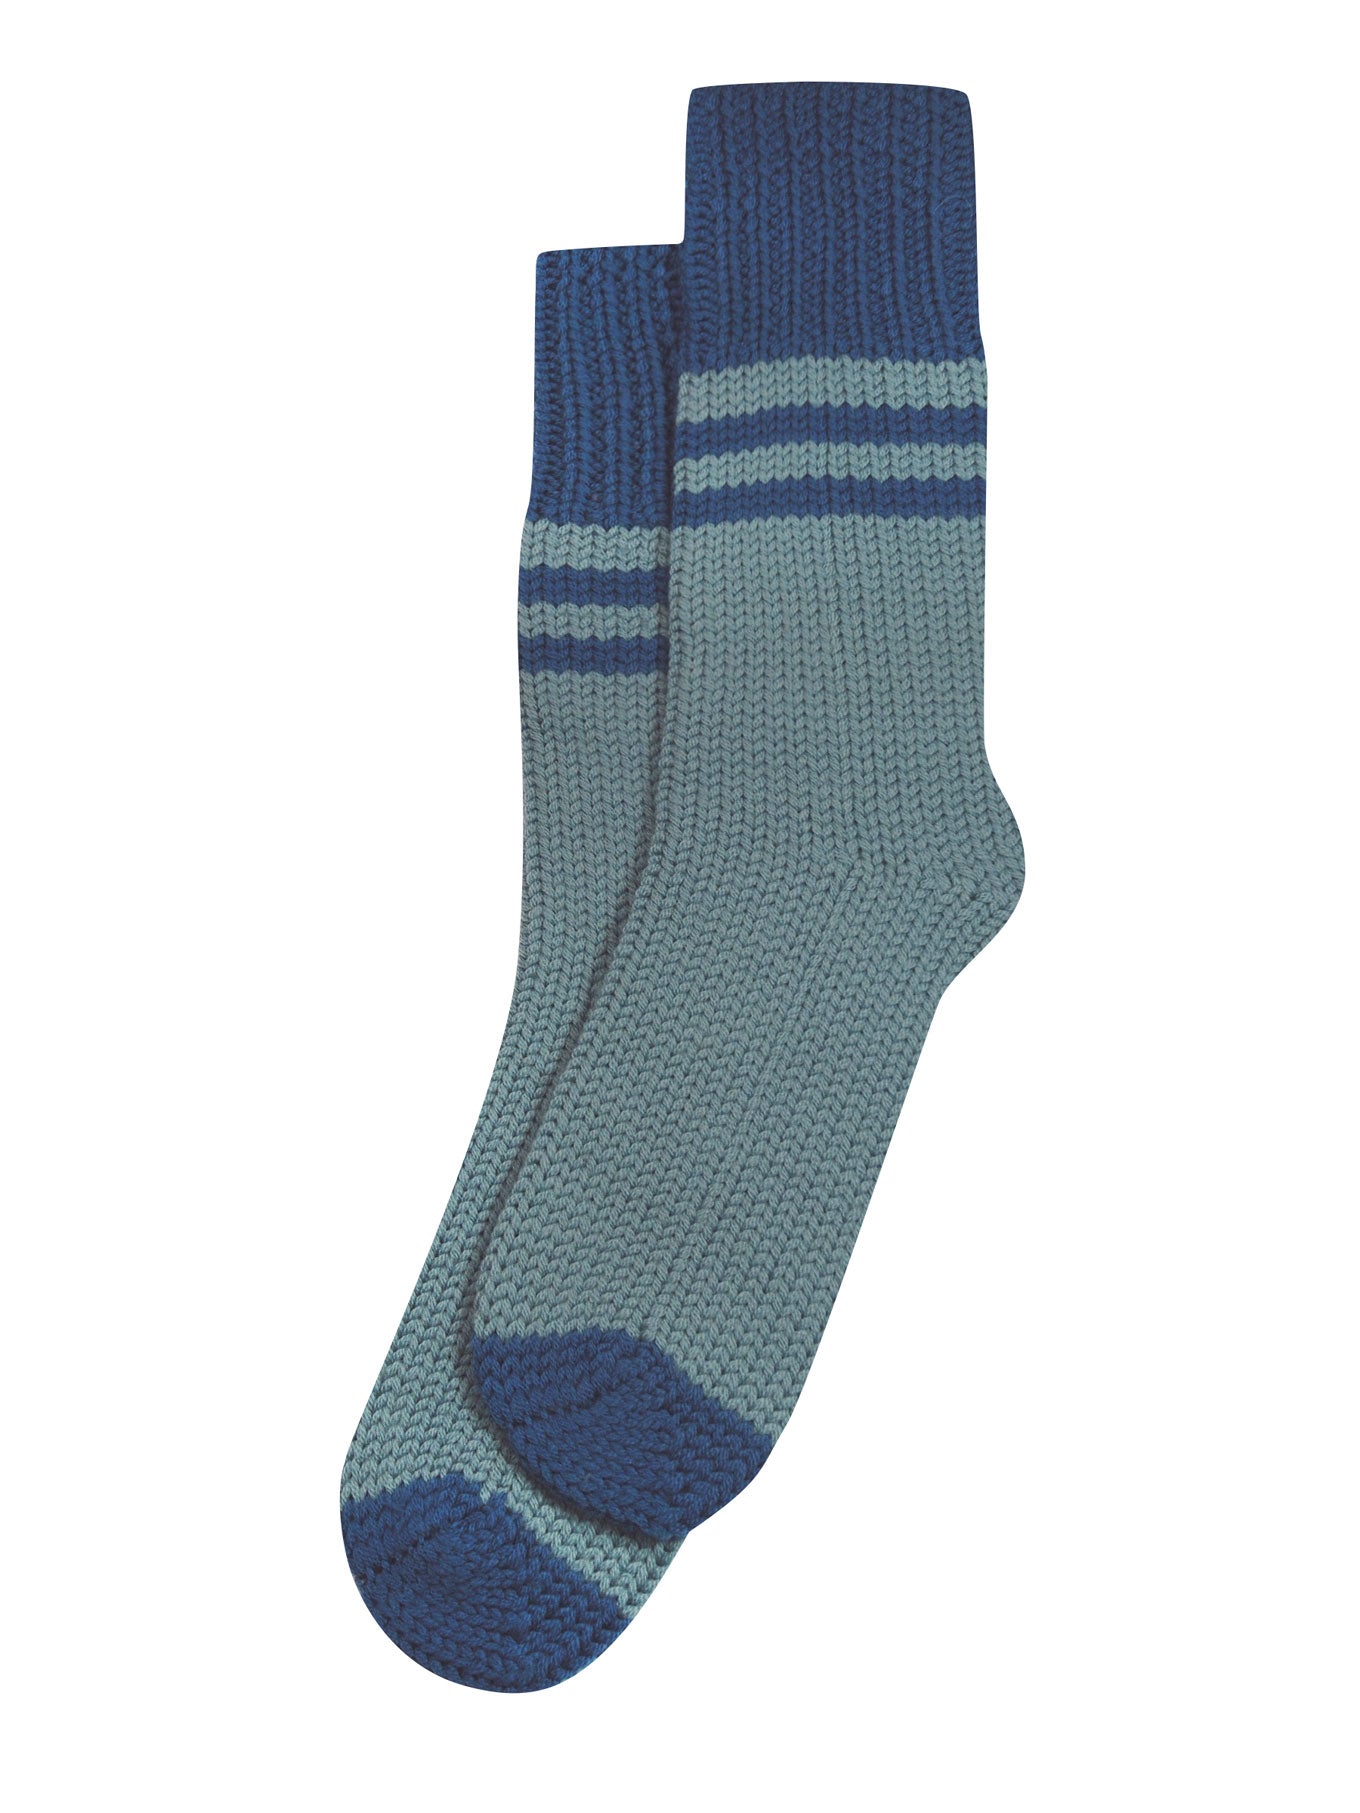 CABIN Merino Wool Socks Lead Blue